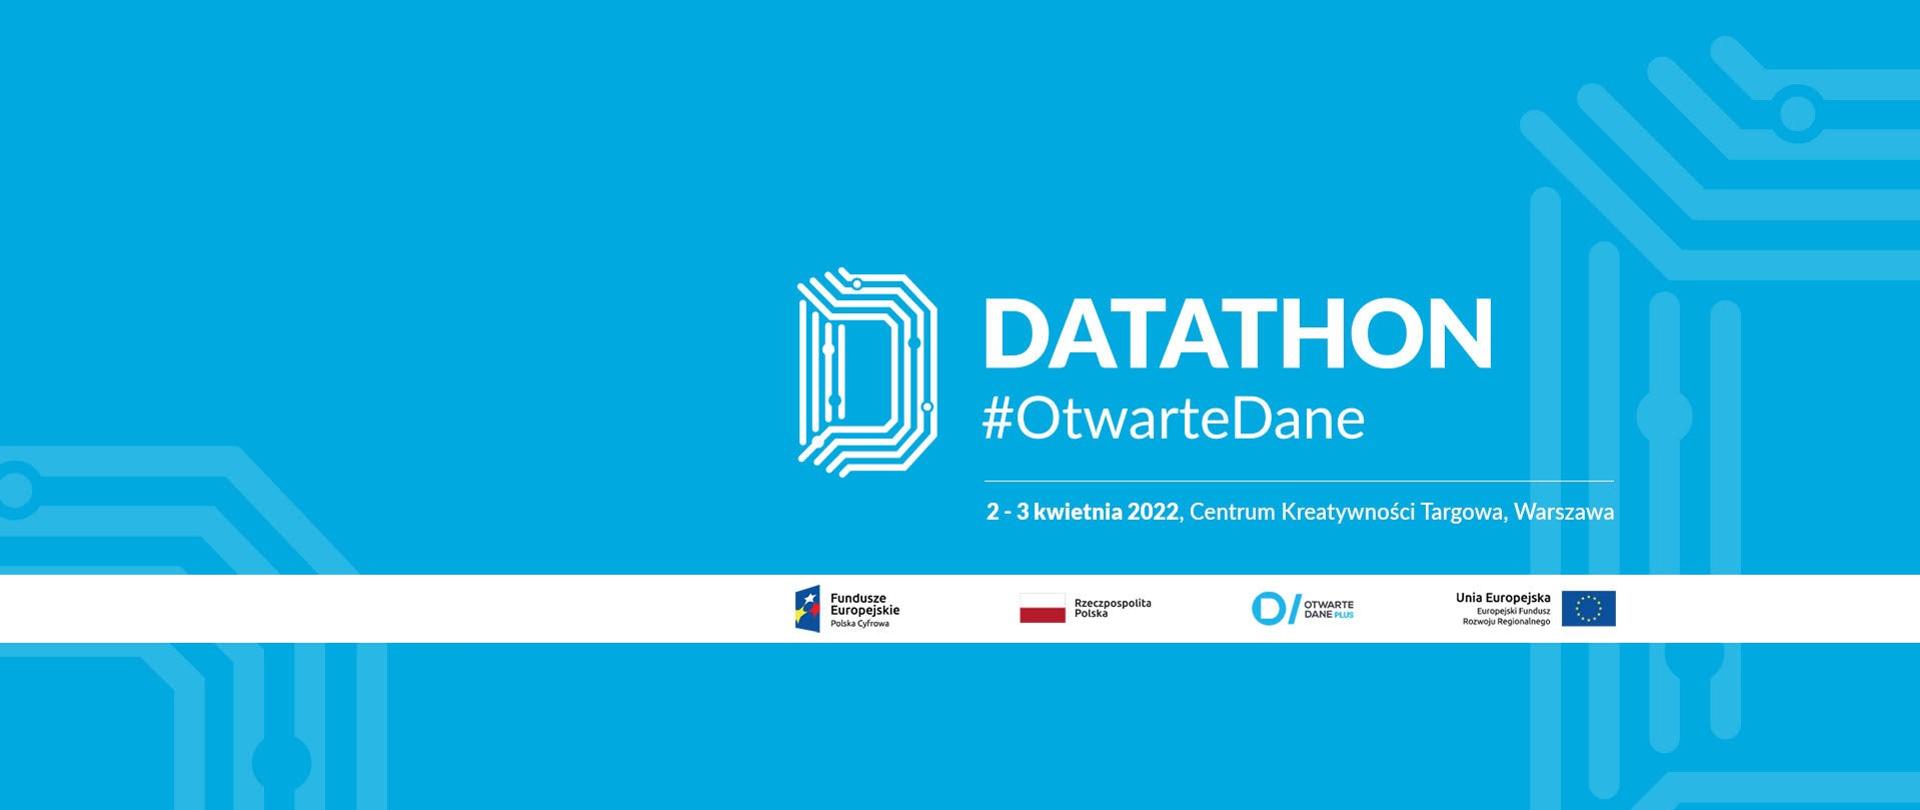 Datathon #OtwarteDane programuje w dobrej sprawie